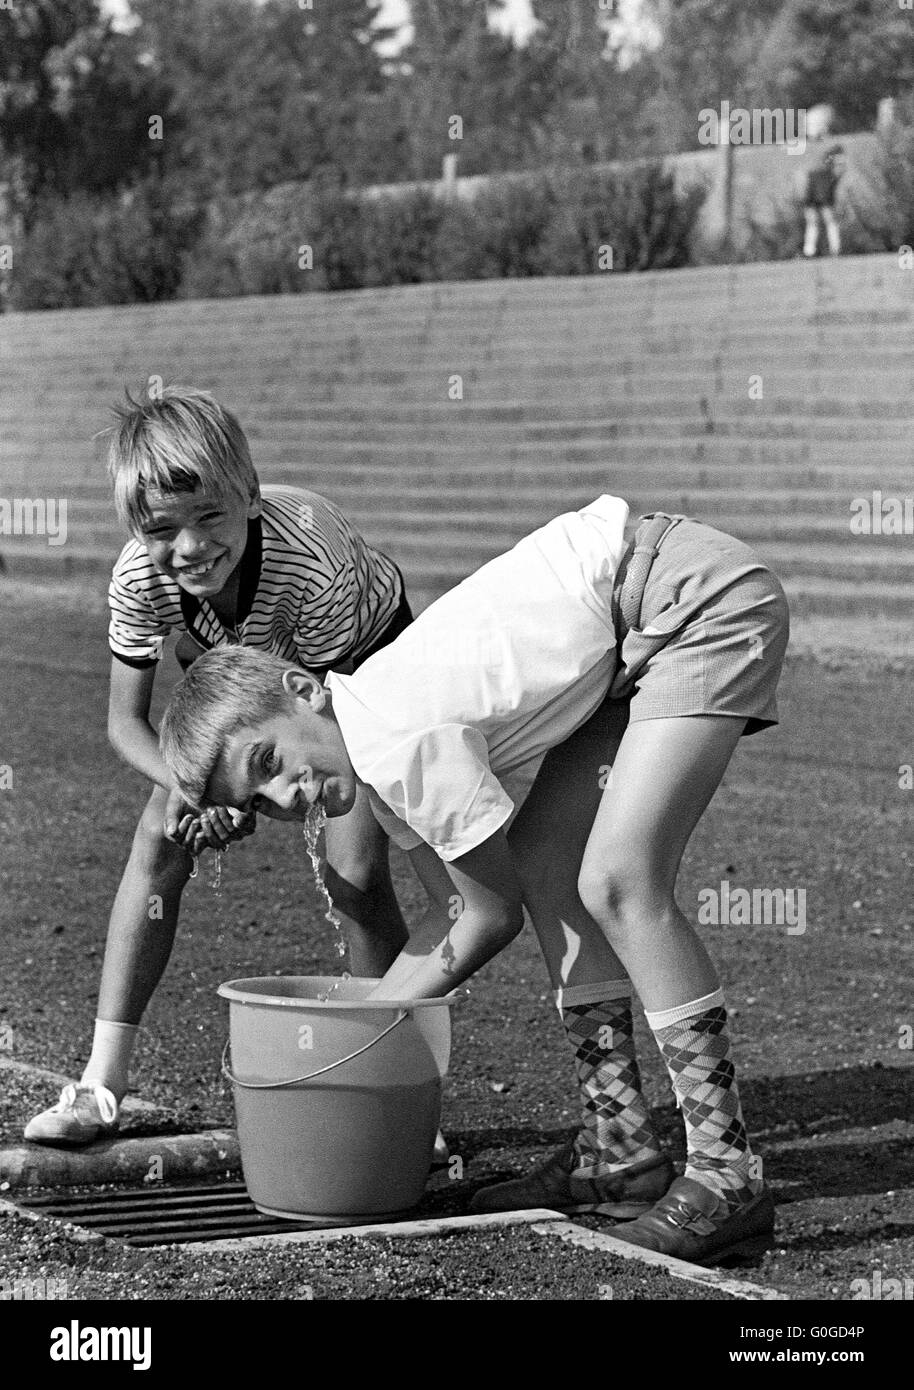 Sechziger Jahre, schwarz / weiß Foto, Menschen, Sommerhitze, zwei jungen 10  bis 13 Jahren erfrischend an einem Wassereimer, kurze Hosen, knielange  Socken Stockfotografie - Alamy